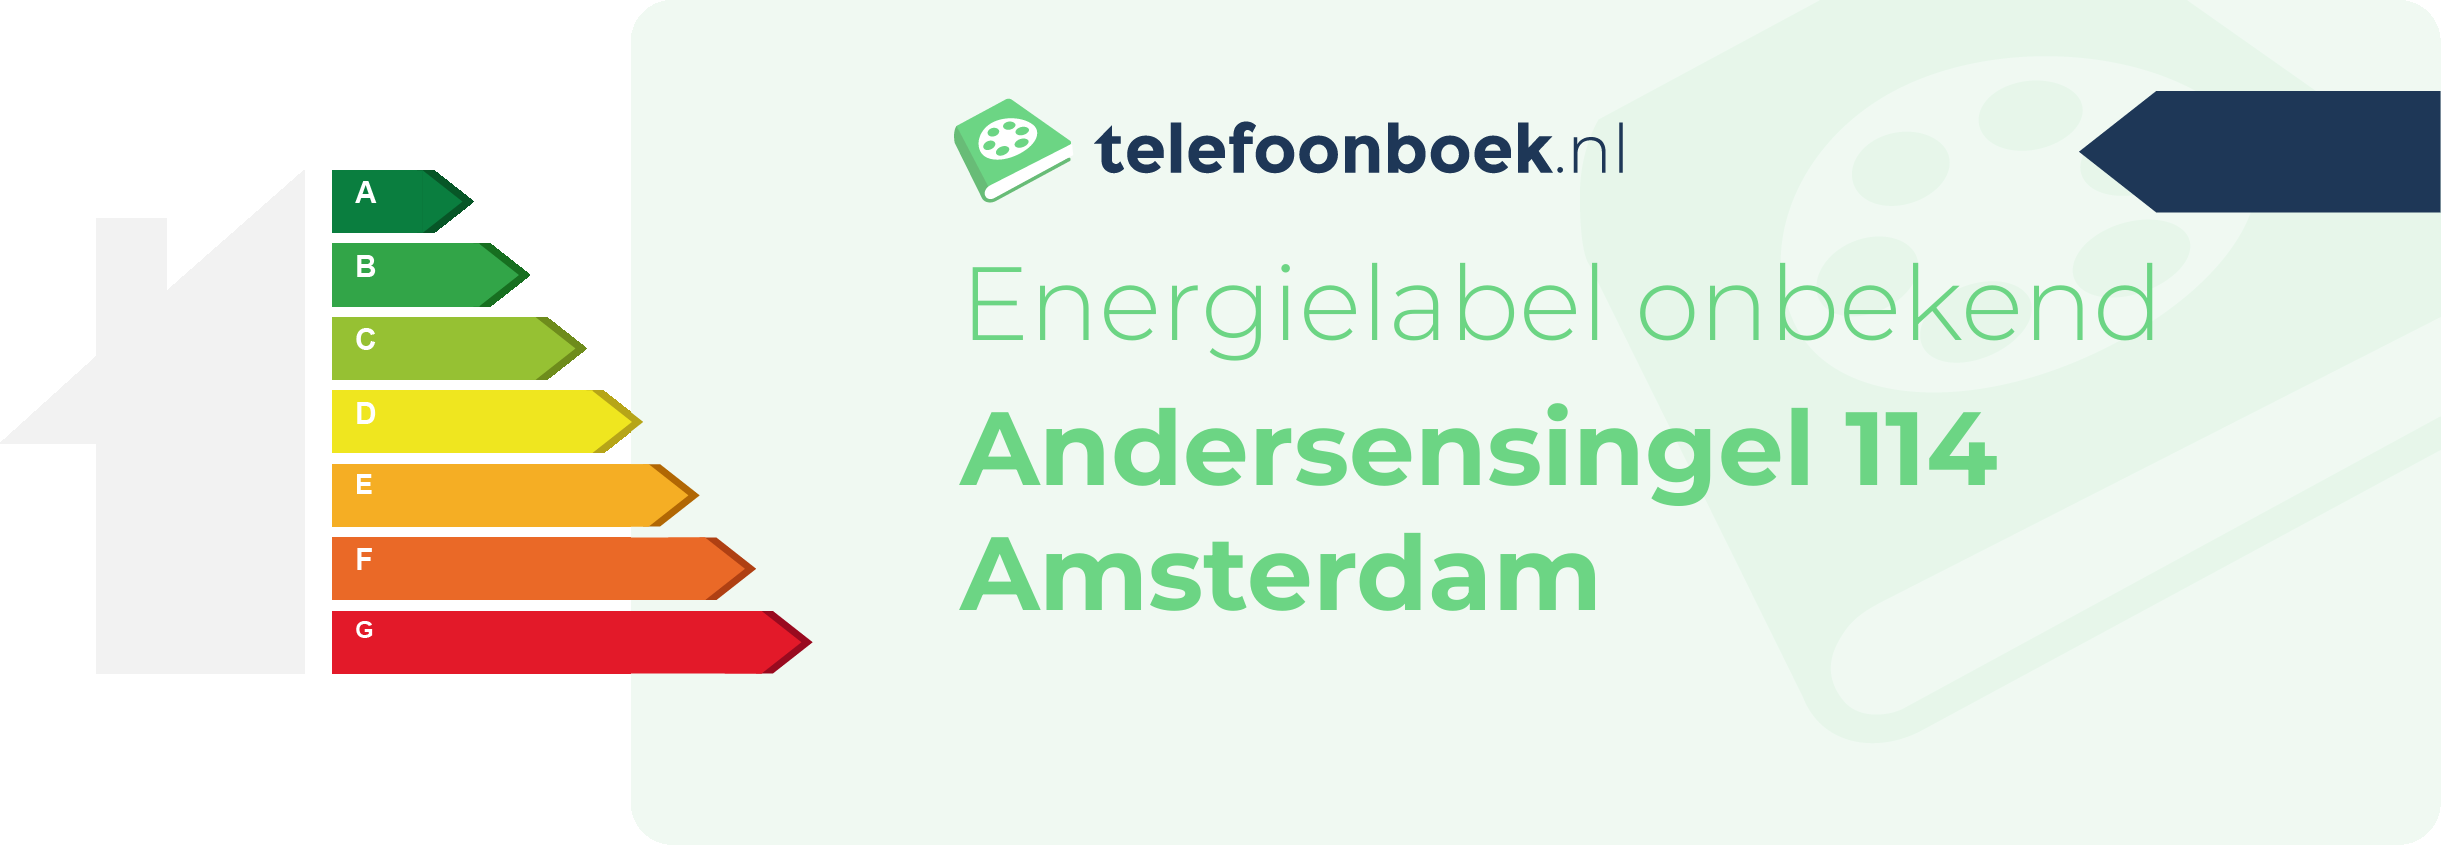 Energielabel Andersensingel 114 Amsterdam